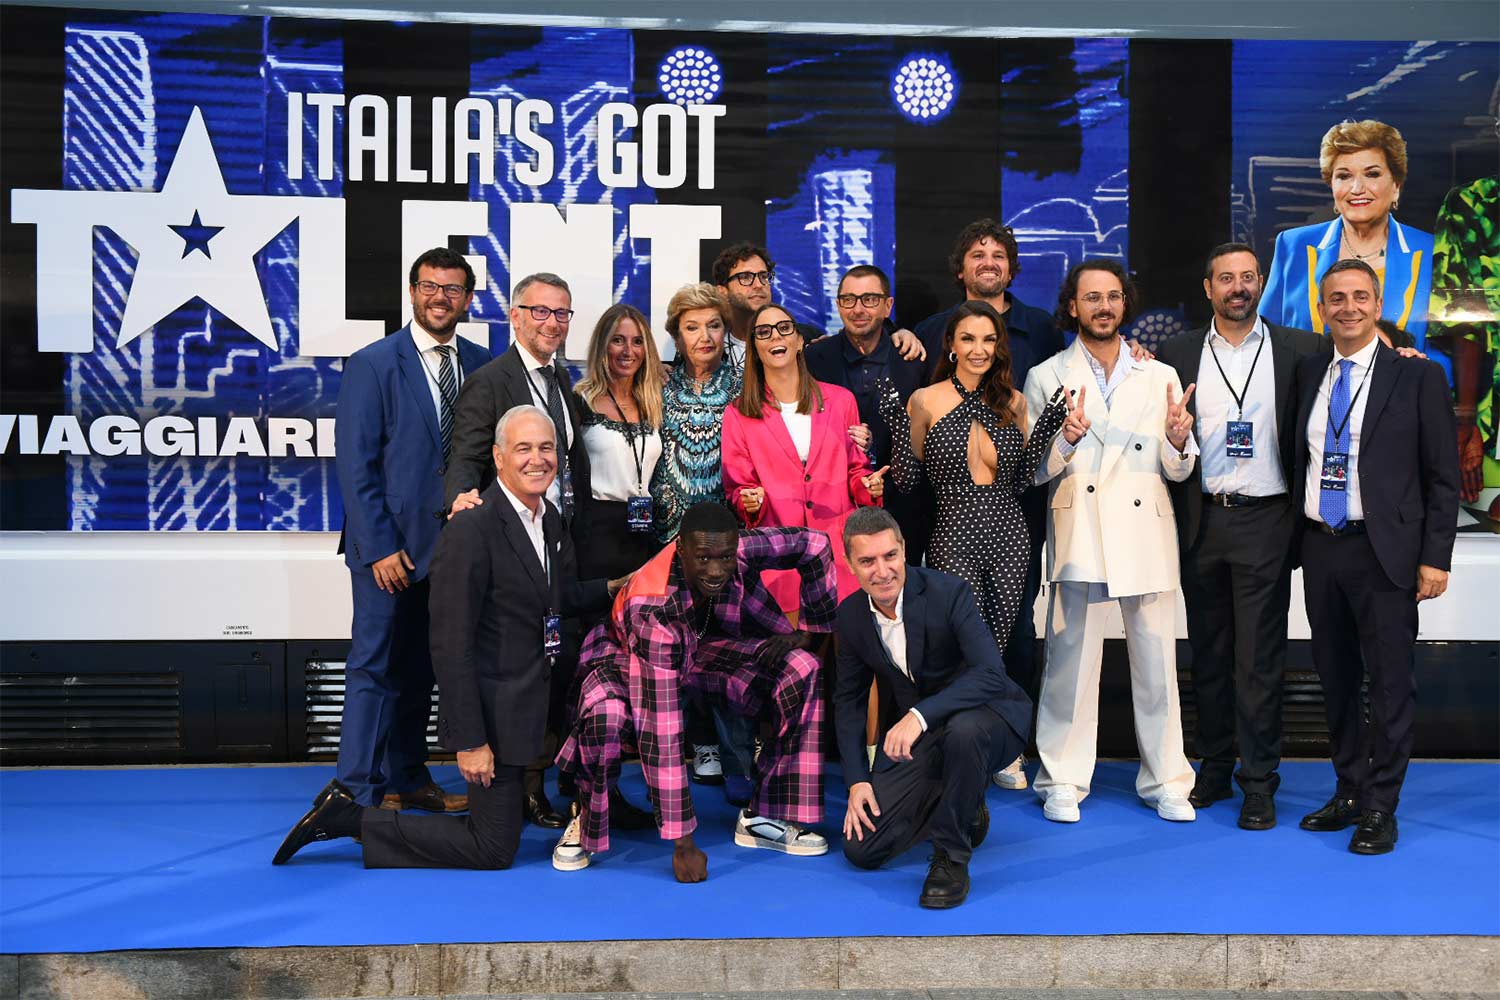 Cast Italia's Got Talent